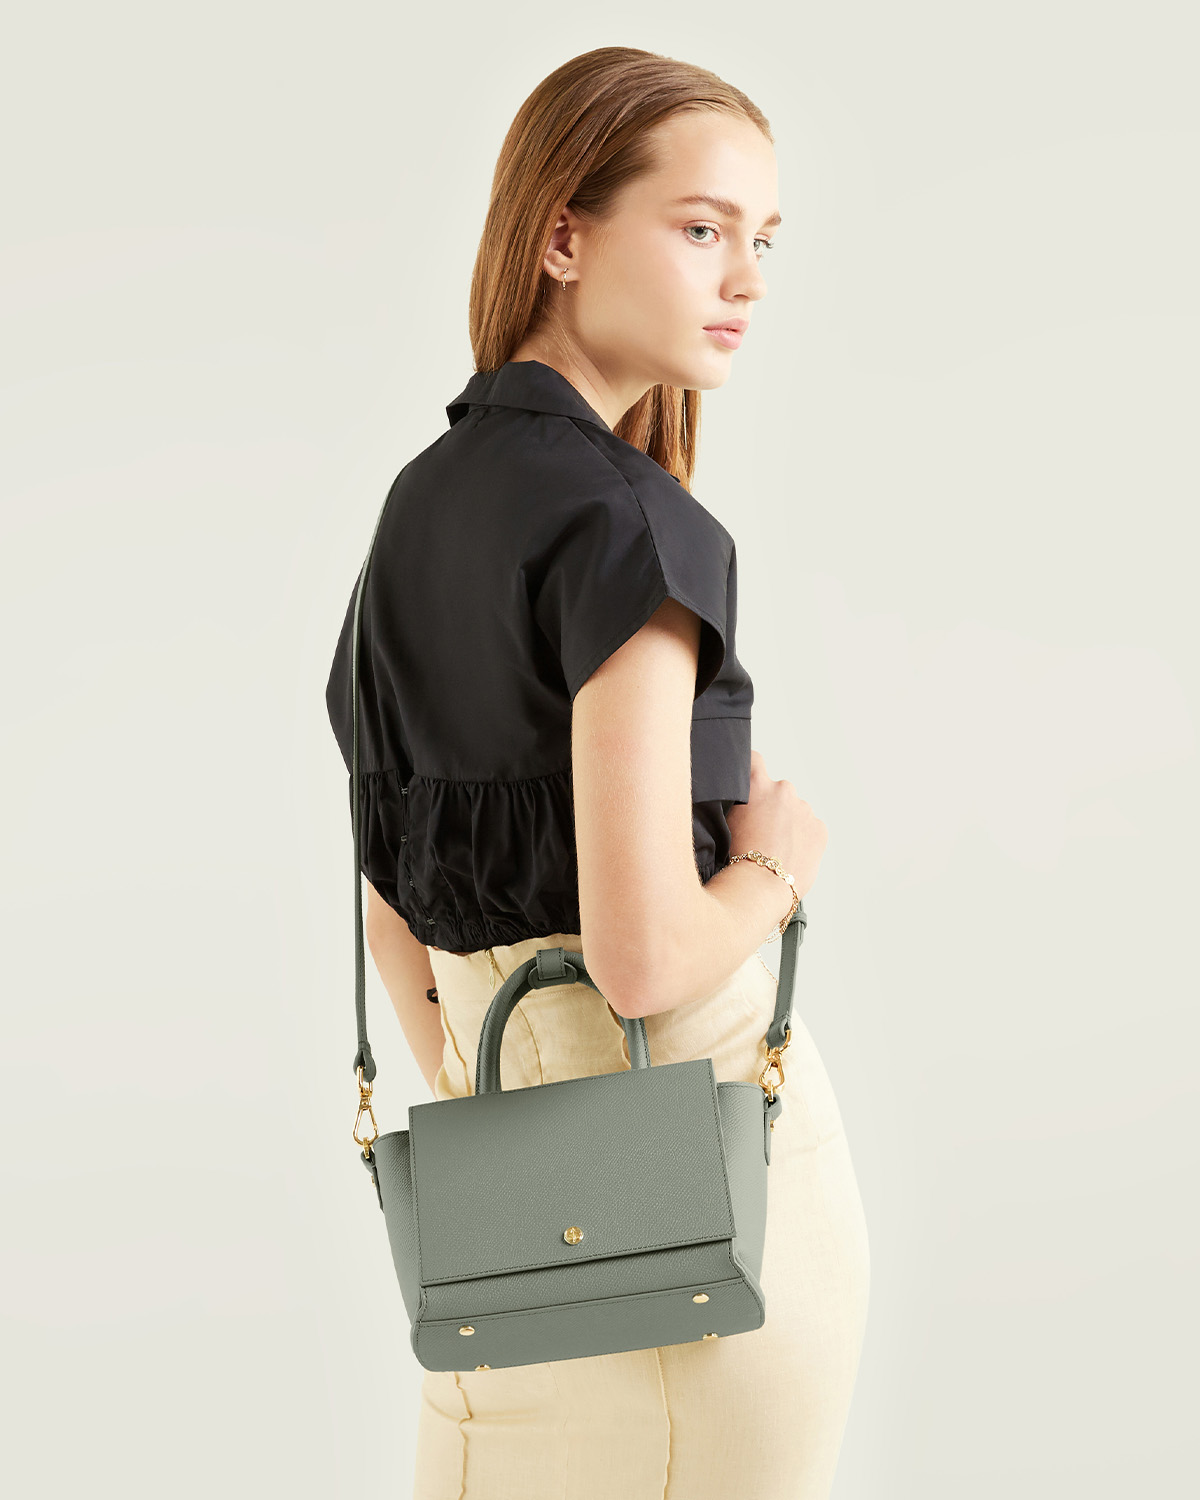 กระเป๋าถือหนังแท้ VERA Heidi Leather Handbag, ไซส์ 22 สี Sage